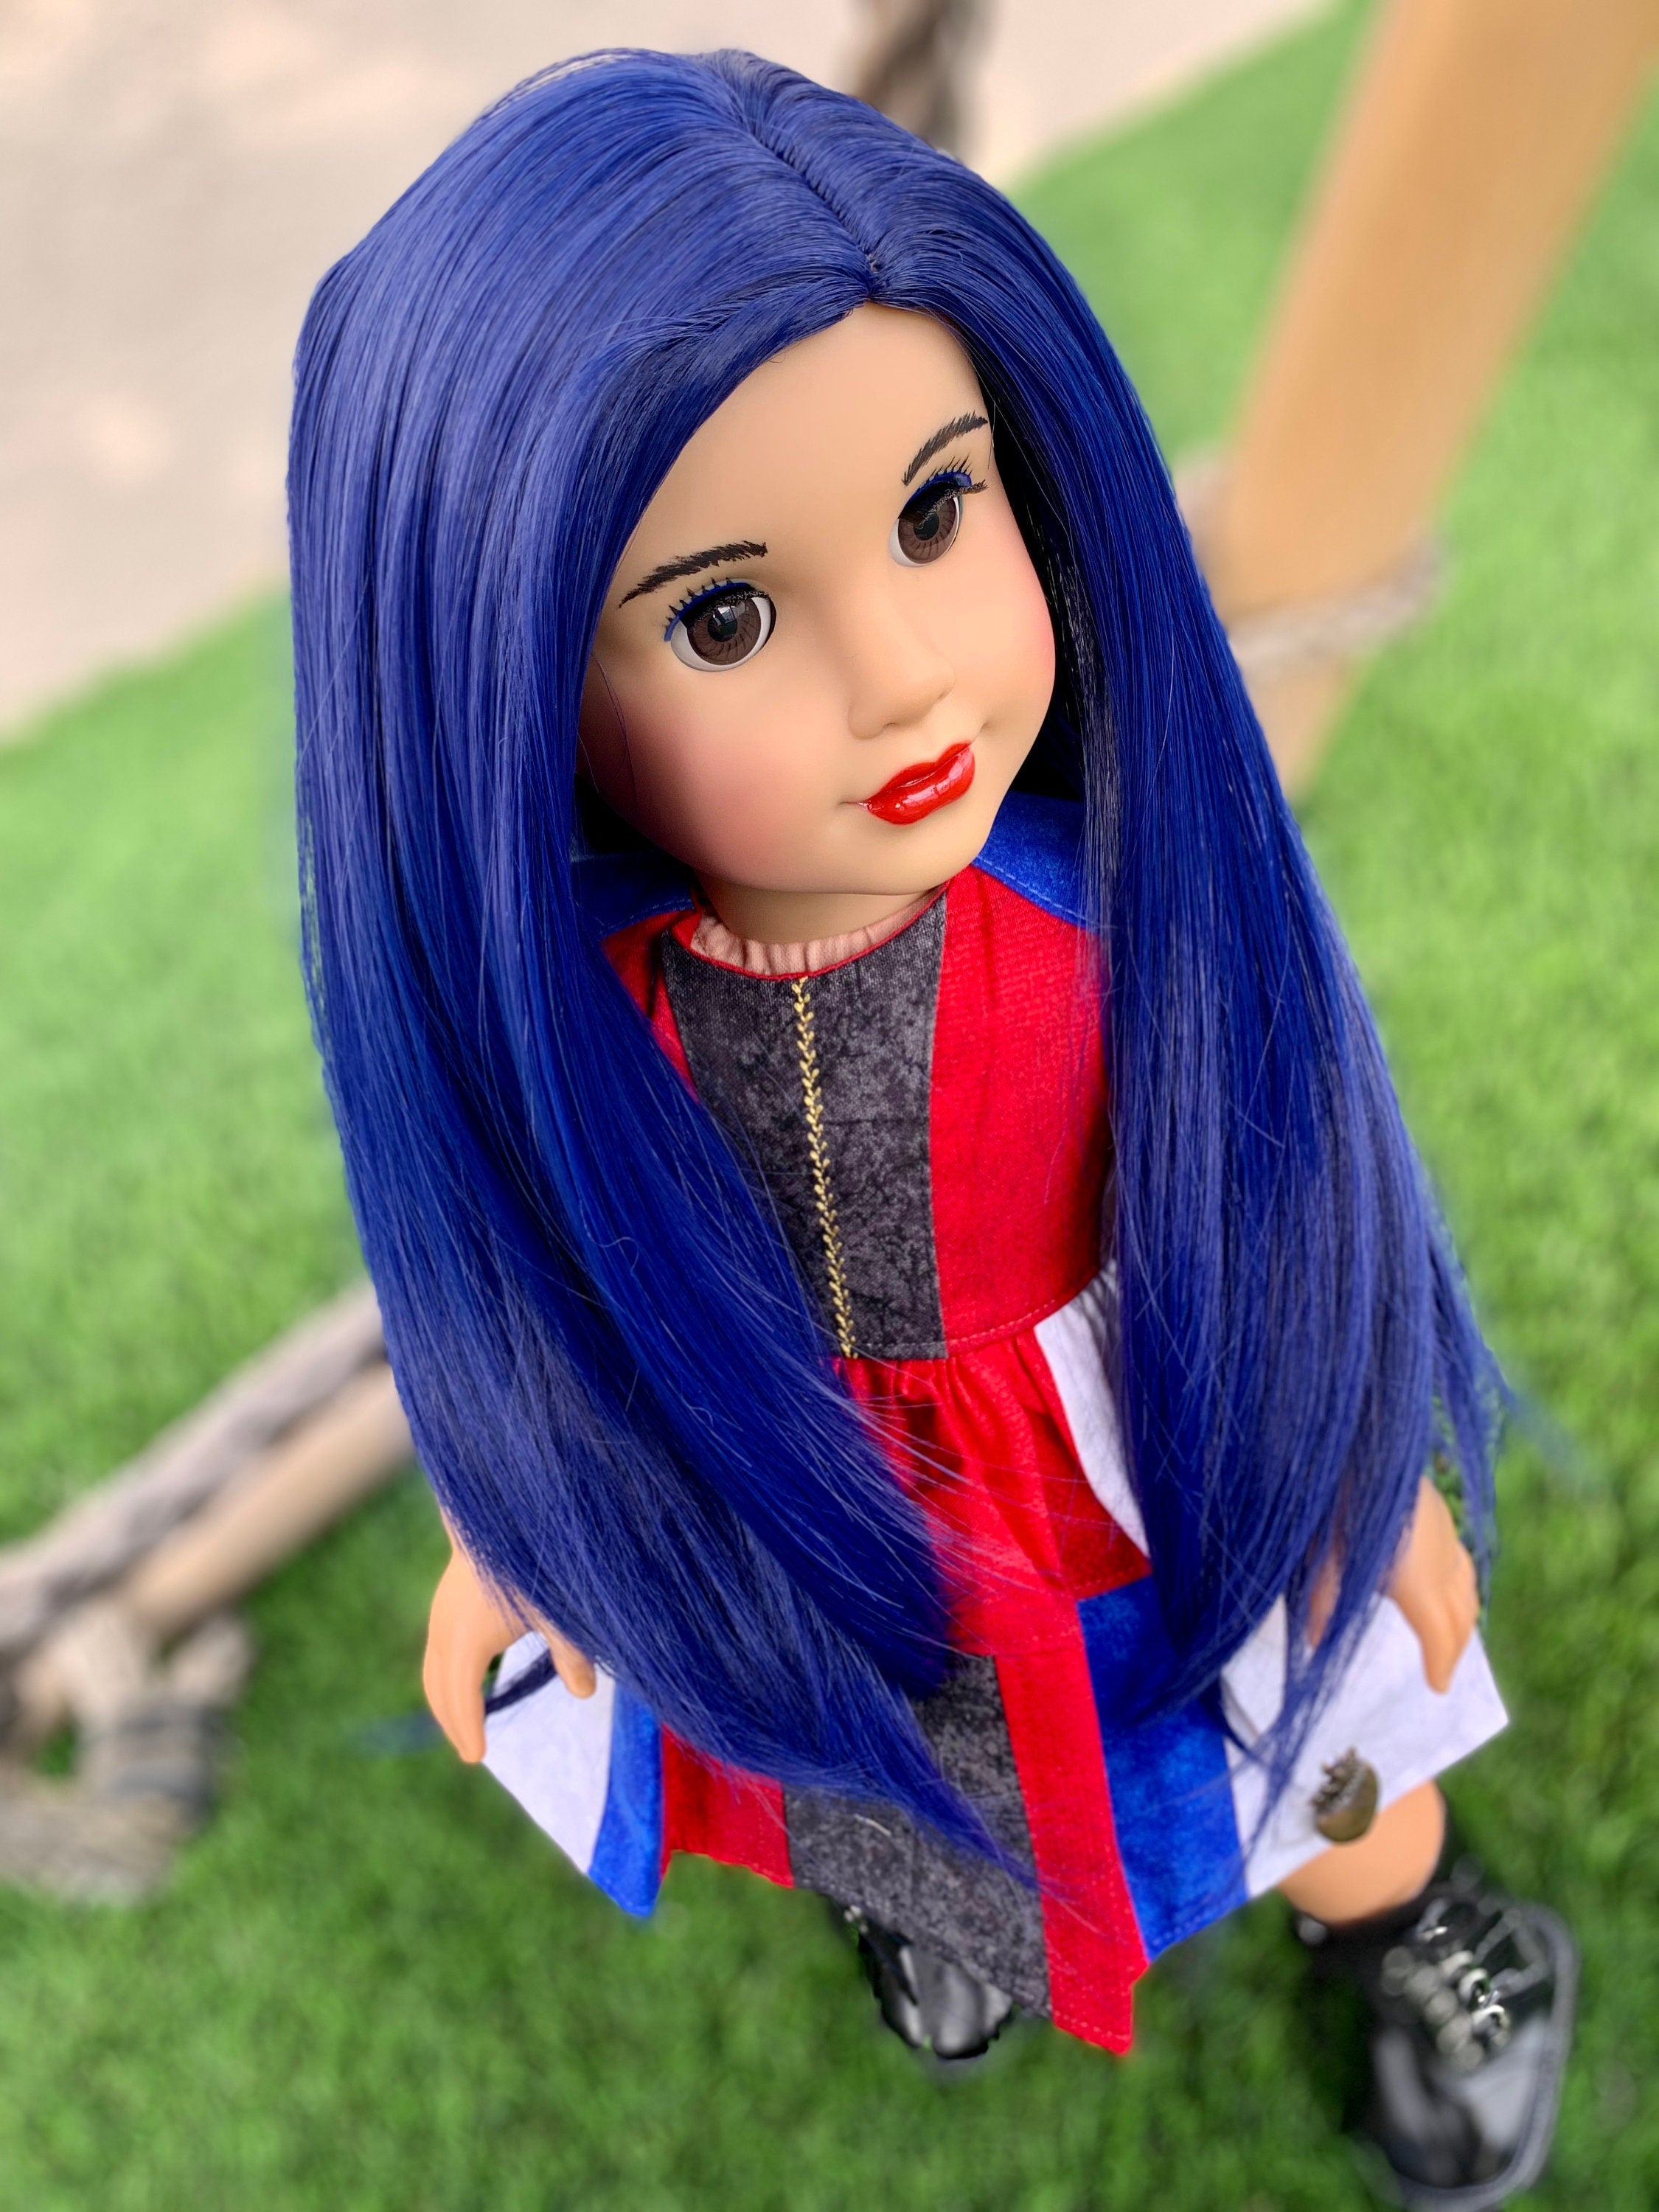 Custom doll wig for 18" American Girl Dolls - Heat Safe - Tangle Resistant - fits 10-11" head size of 18" dolls OG Blythe BJD Gotz Blue Evie